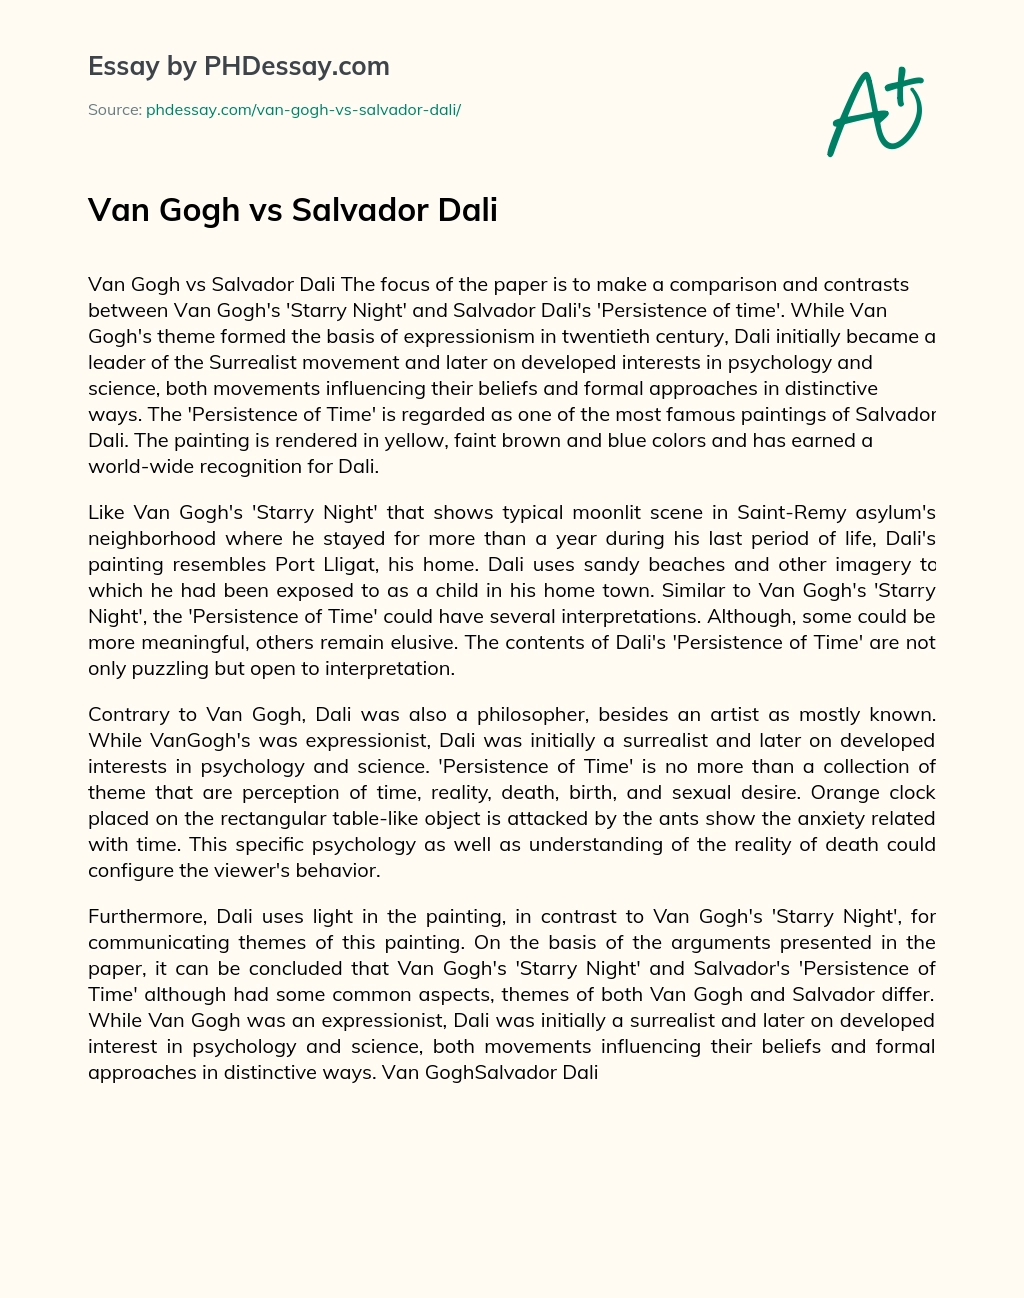 Van Gogh vs Salvador Dali essay